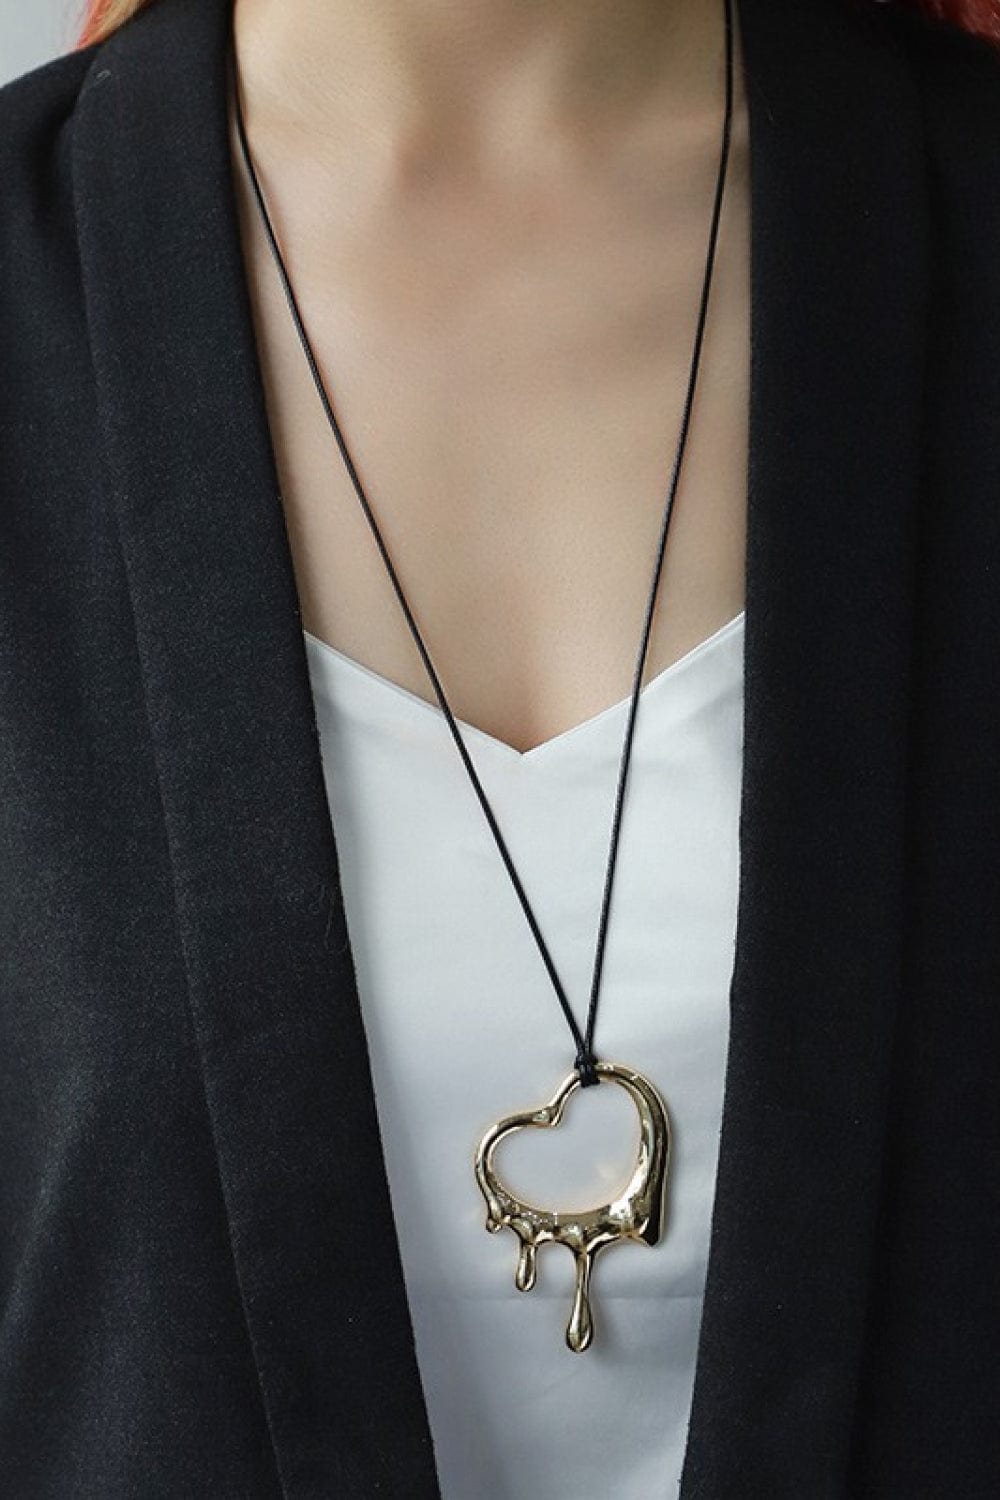 Heart Pendant Cord Necklace - Body By J'ne